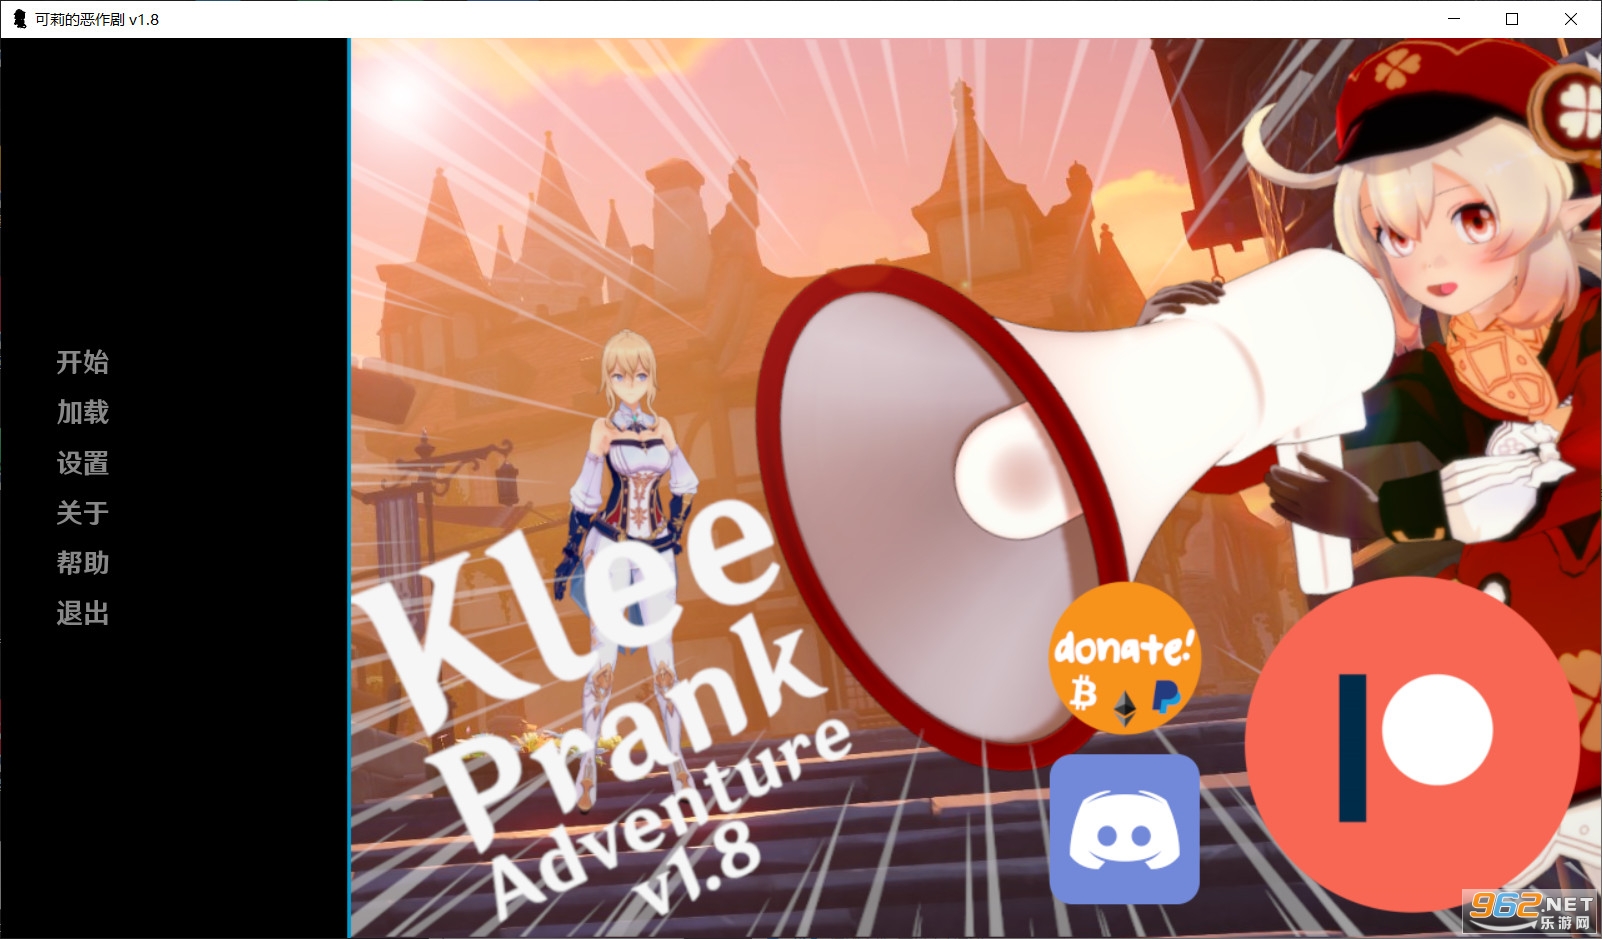 可莉的恶作剧大冒险(Klee Prank Adventure)v1.8汉化作弊版